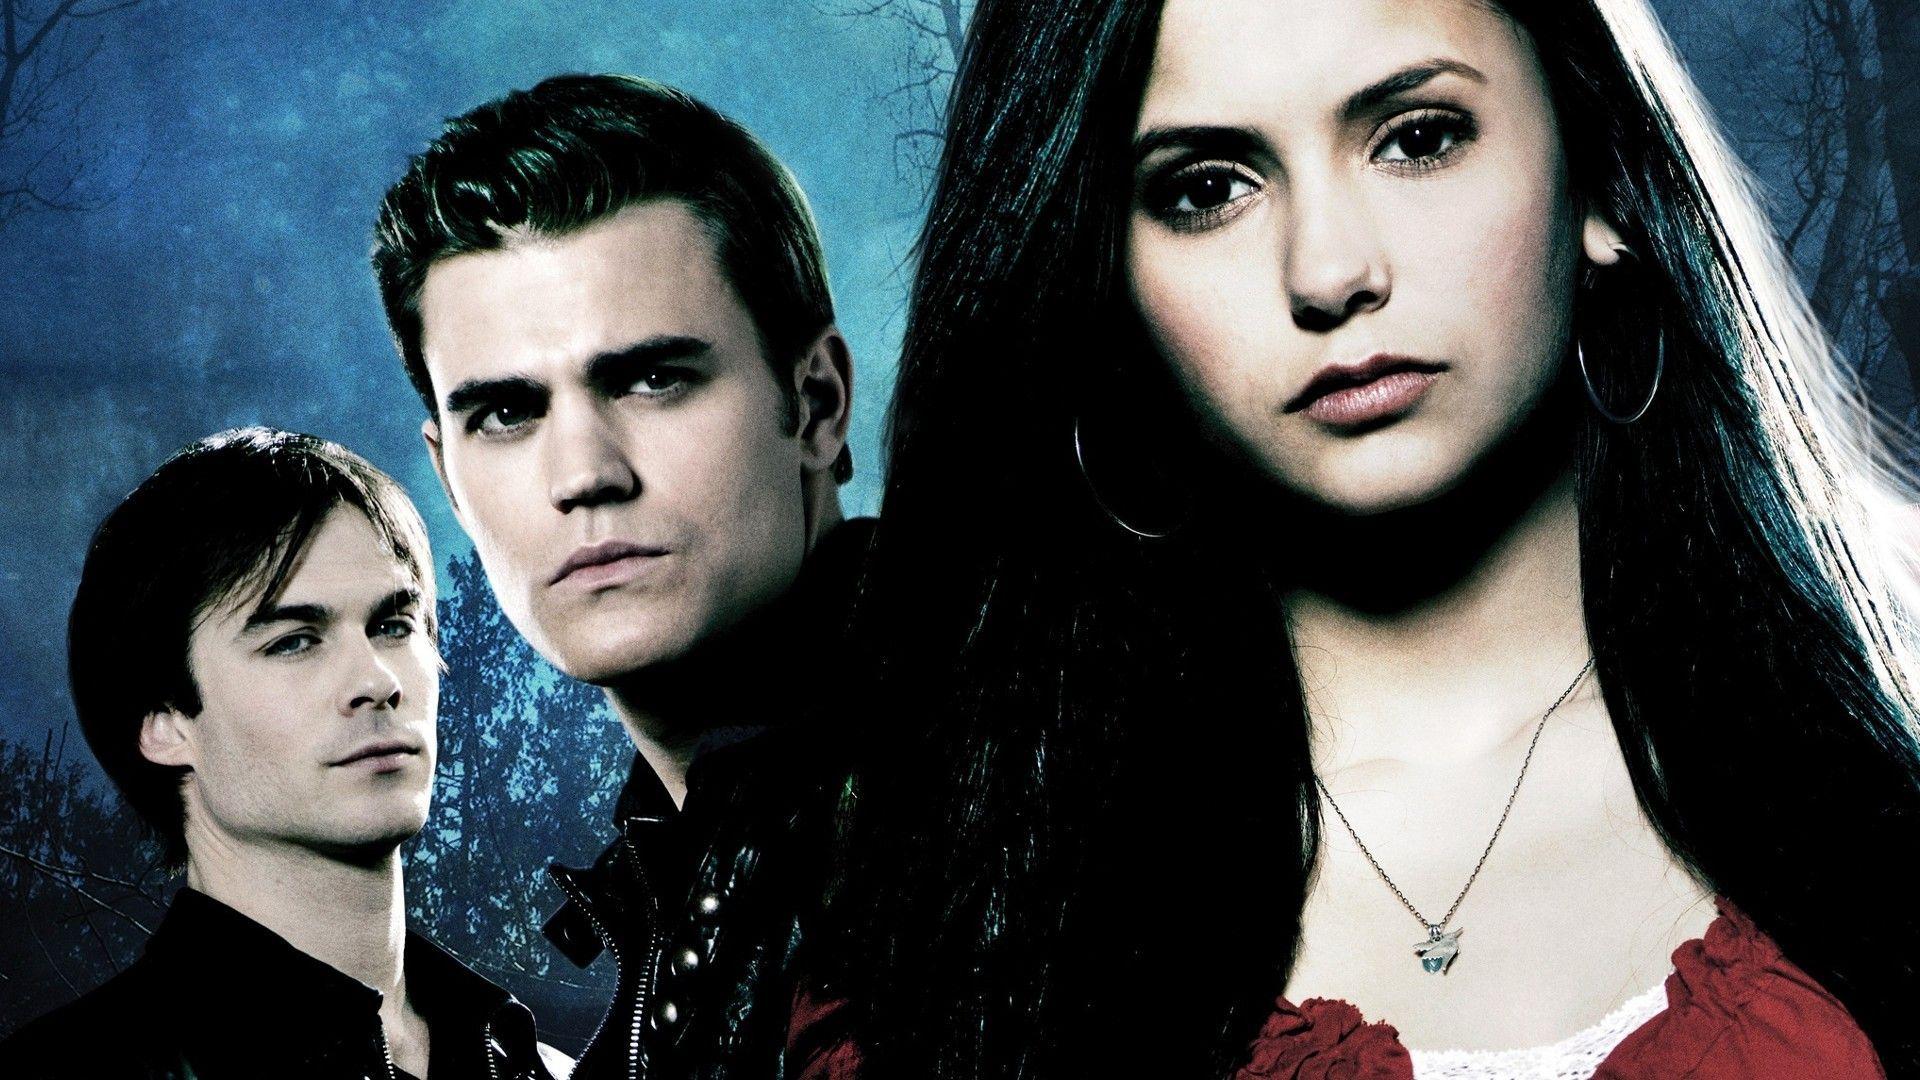 Wallpaper For > Vampire Diaries Season 6 Wallpaper